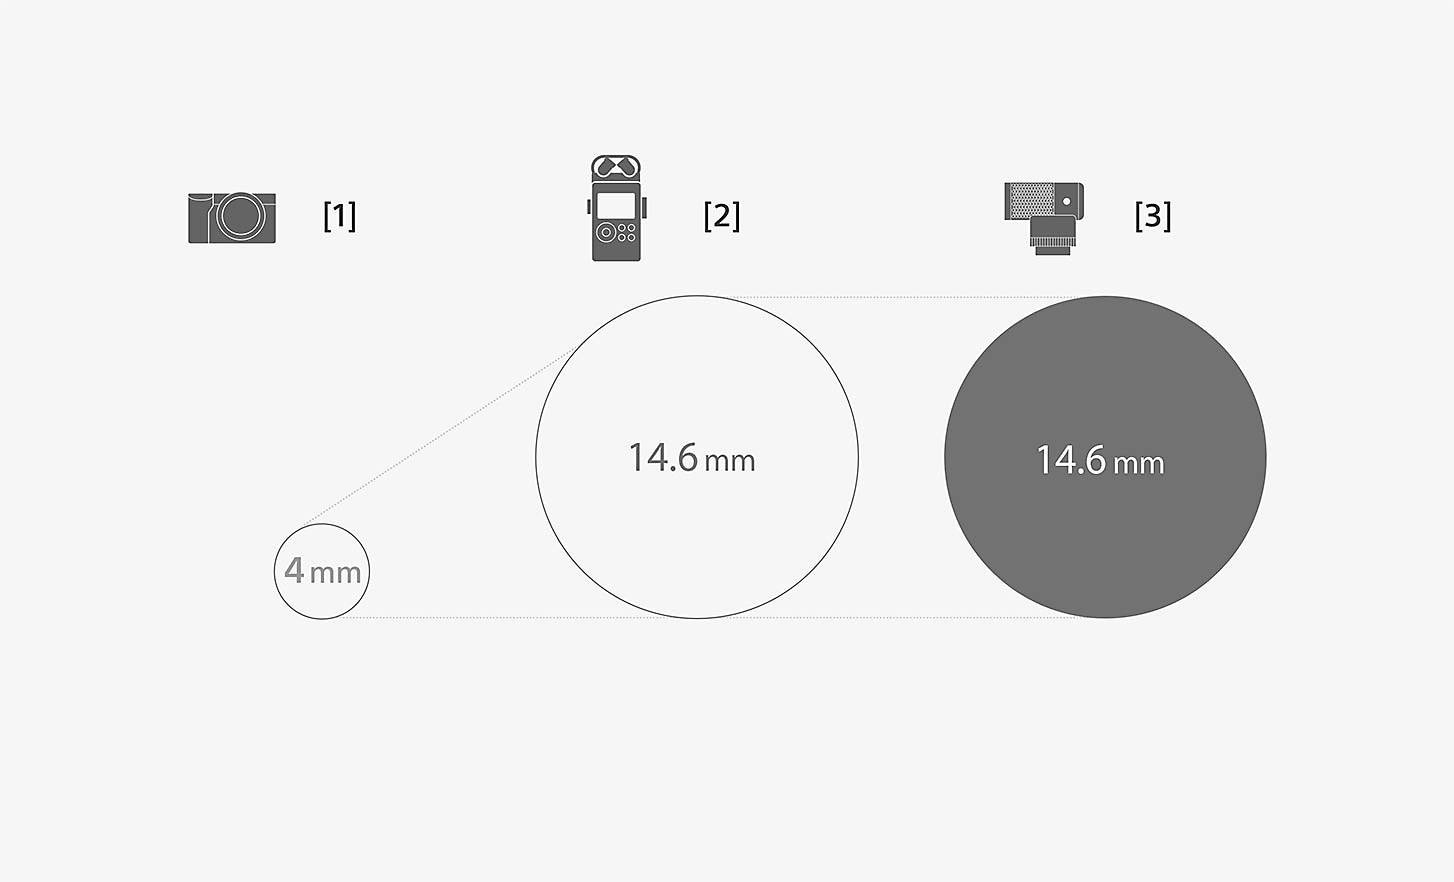 Εικόνα με σύγκριση των διαστάσεων της κάψουλας του μικροφώνου ECM-G1 και ενός τυπικού ενσωματωμένου μικροφώνου